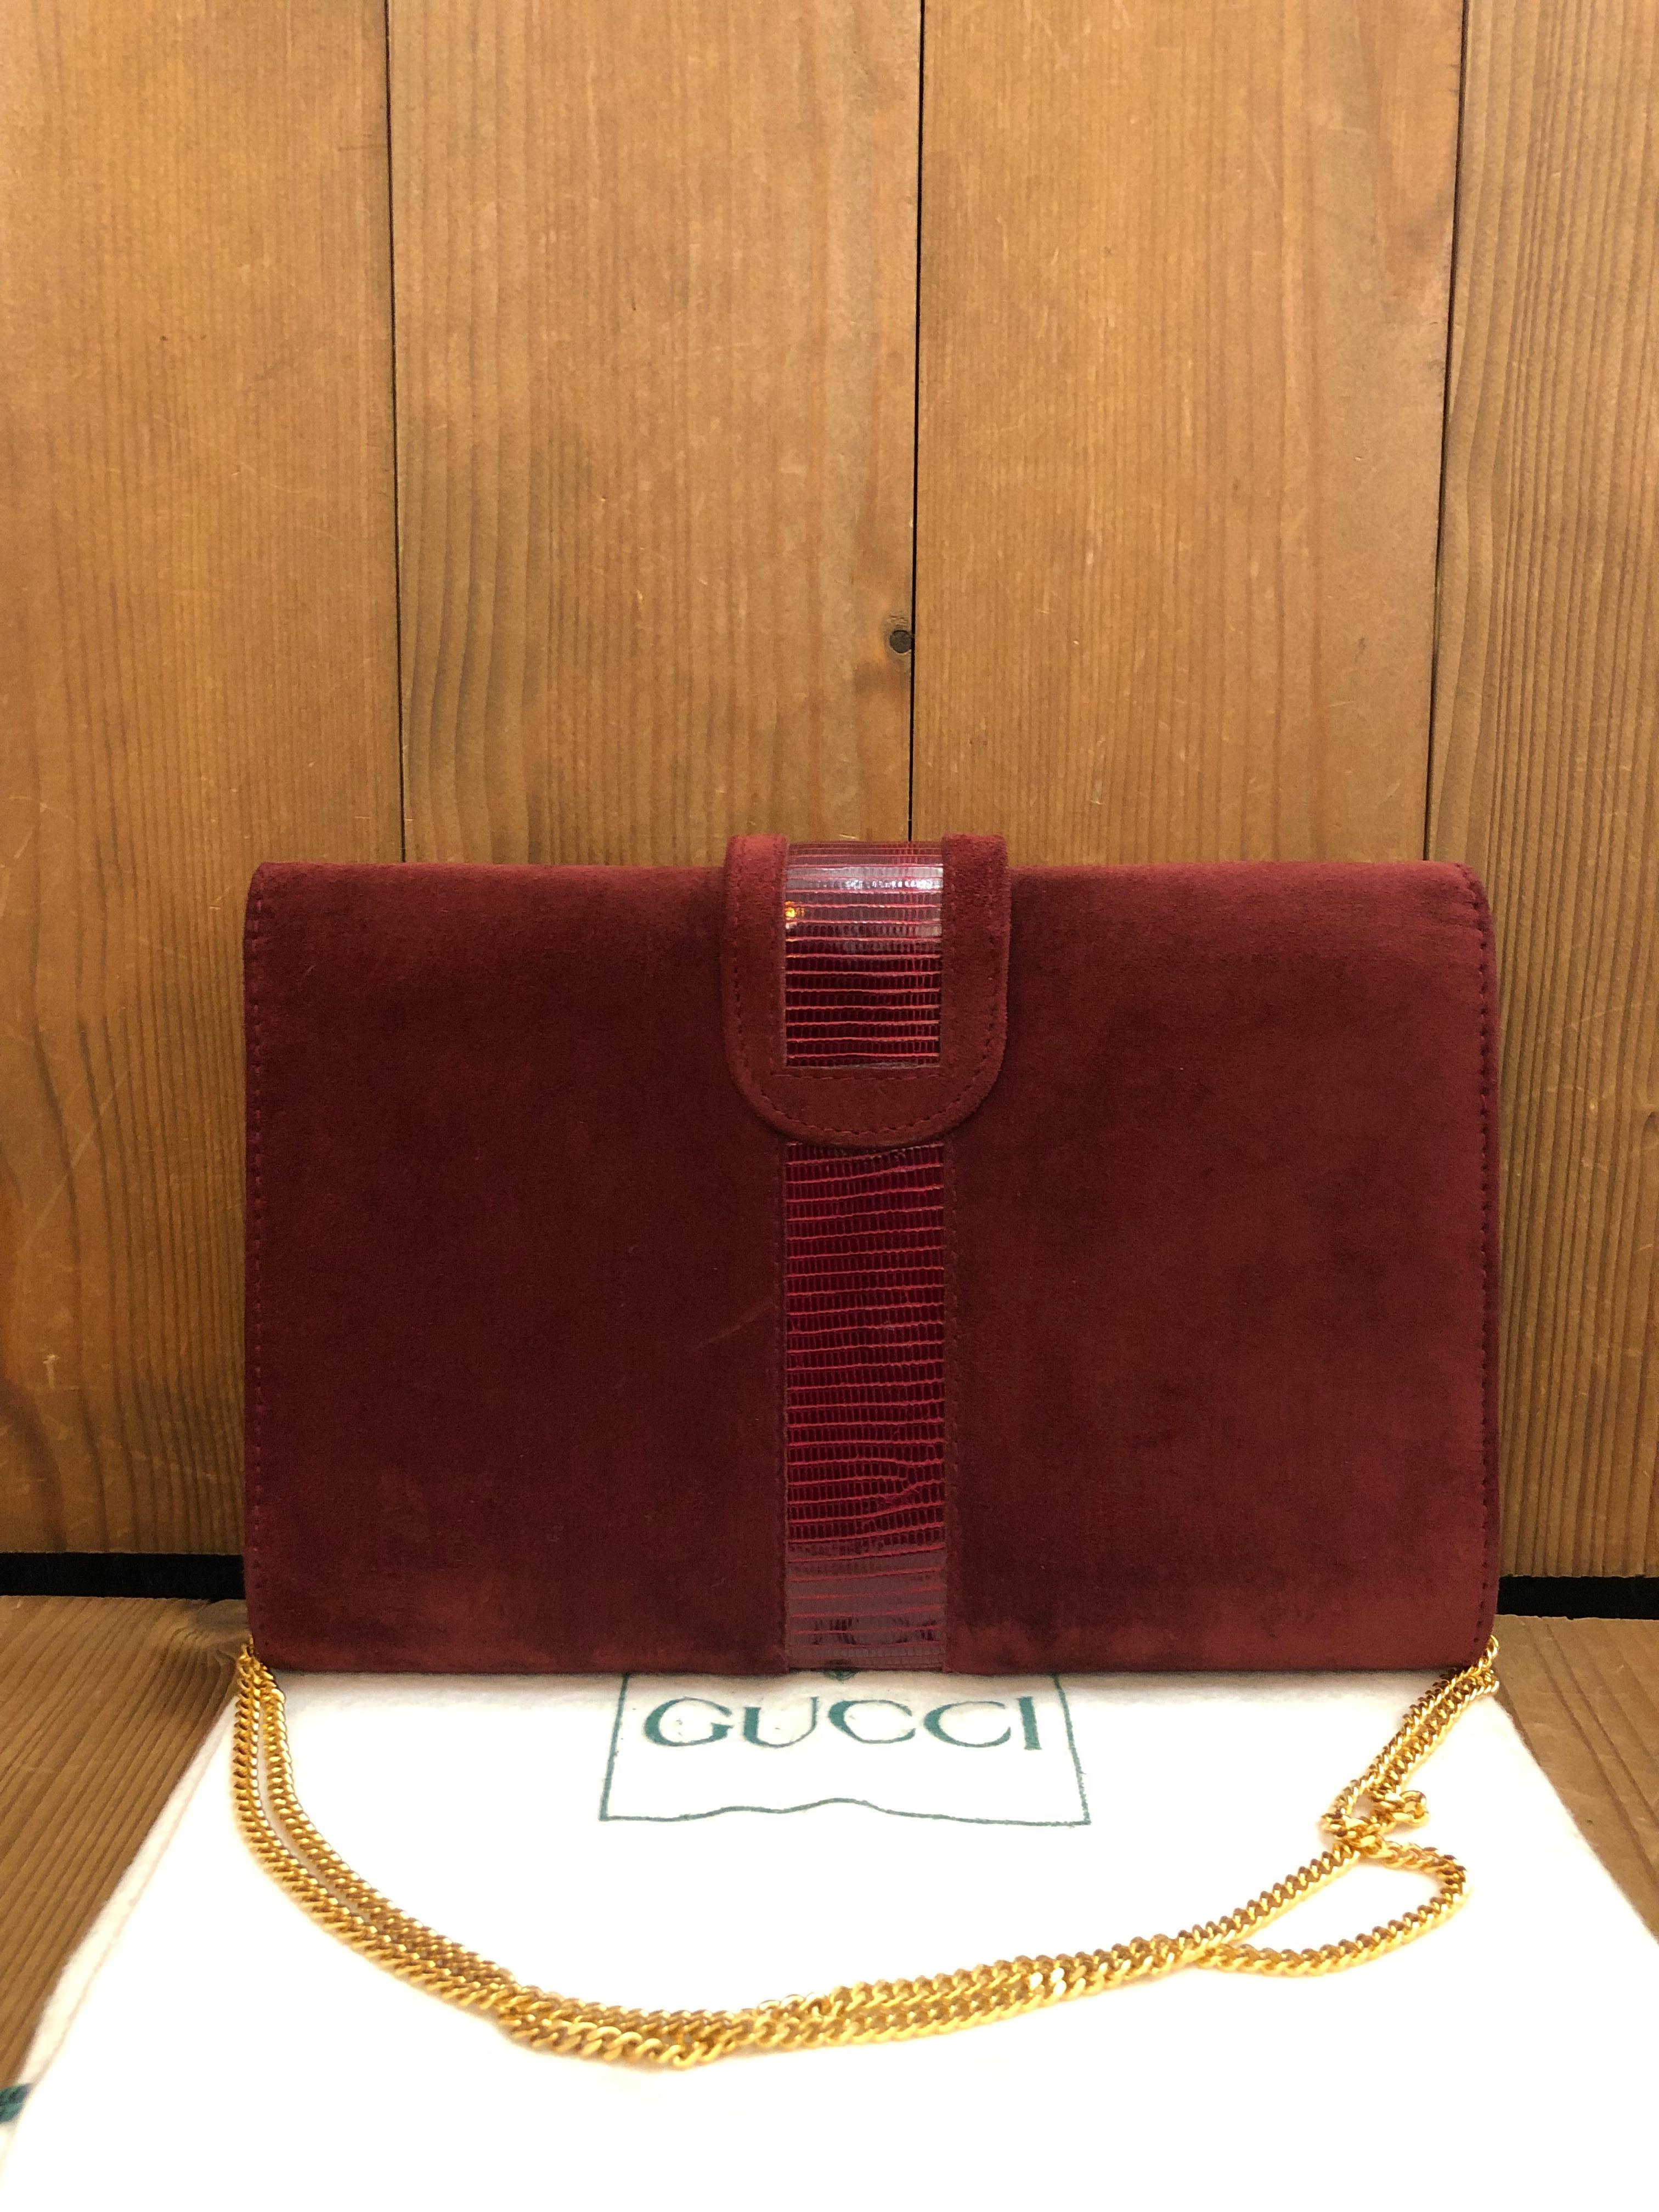 Ce petit sac à chaîne vintage de Gucci est confectionné en nubuck bordeaux et garni de cuir verni gaufré, avec des ferrures dorées. La fermeture à rabat avec bouton pression ouvre sur un intérieur en cuir bordeaux doté de deux poches plaquées. Il